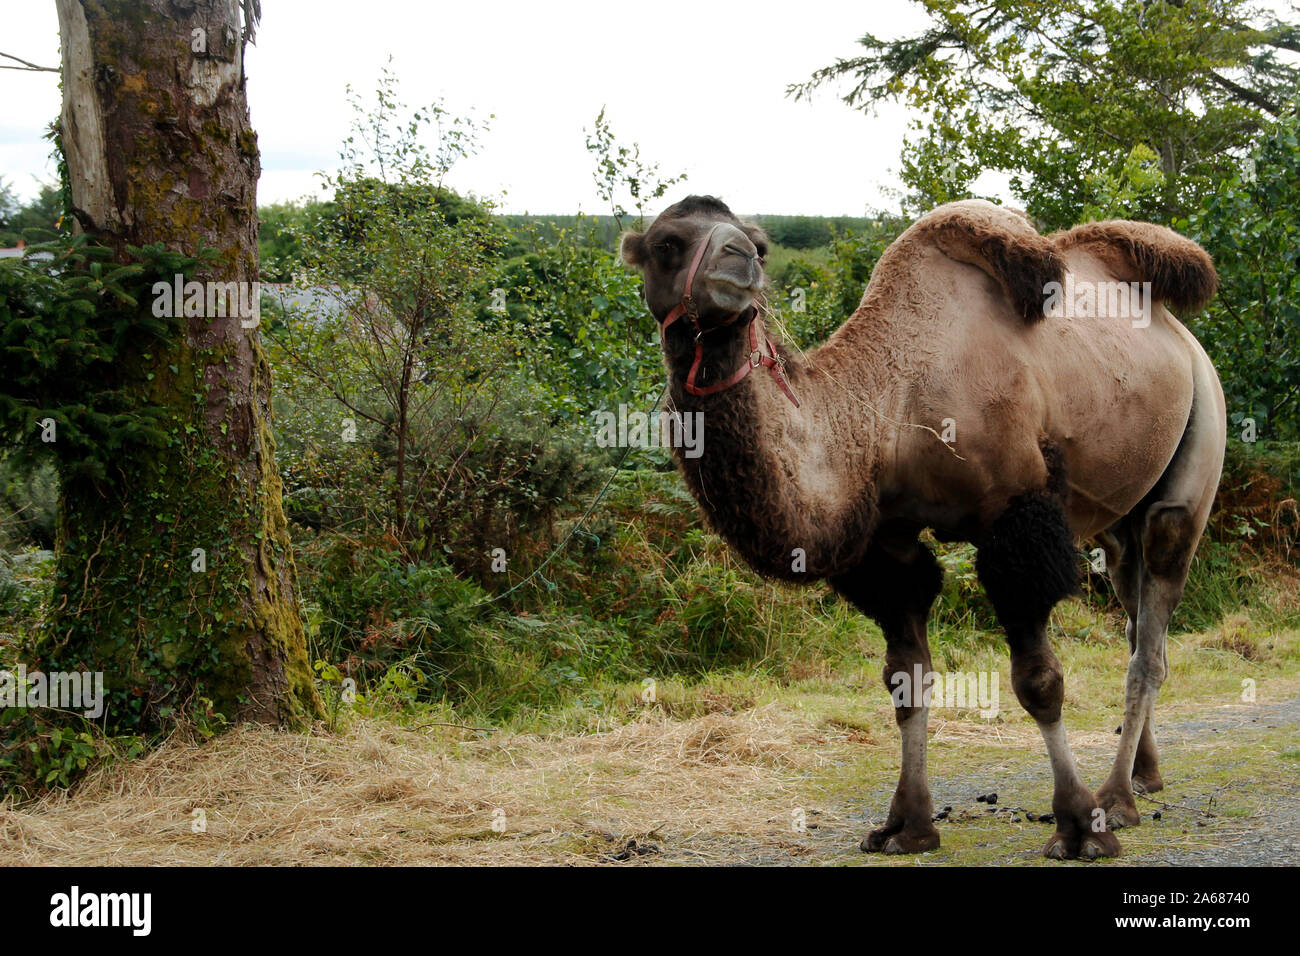 Avis d'un chameau sur un chemin de terre, d'Amérique latine des camélidés Banque D'Images